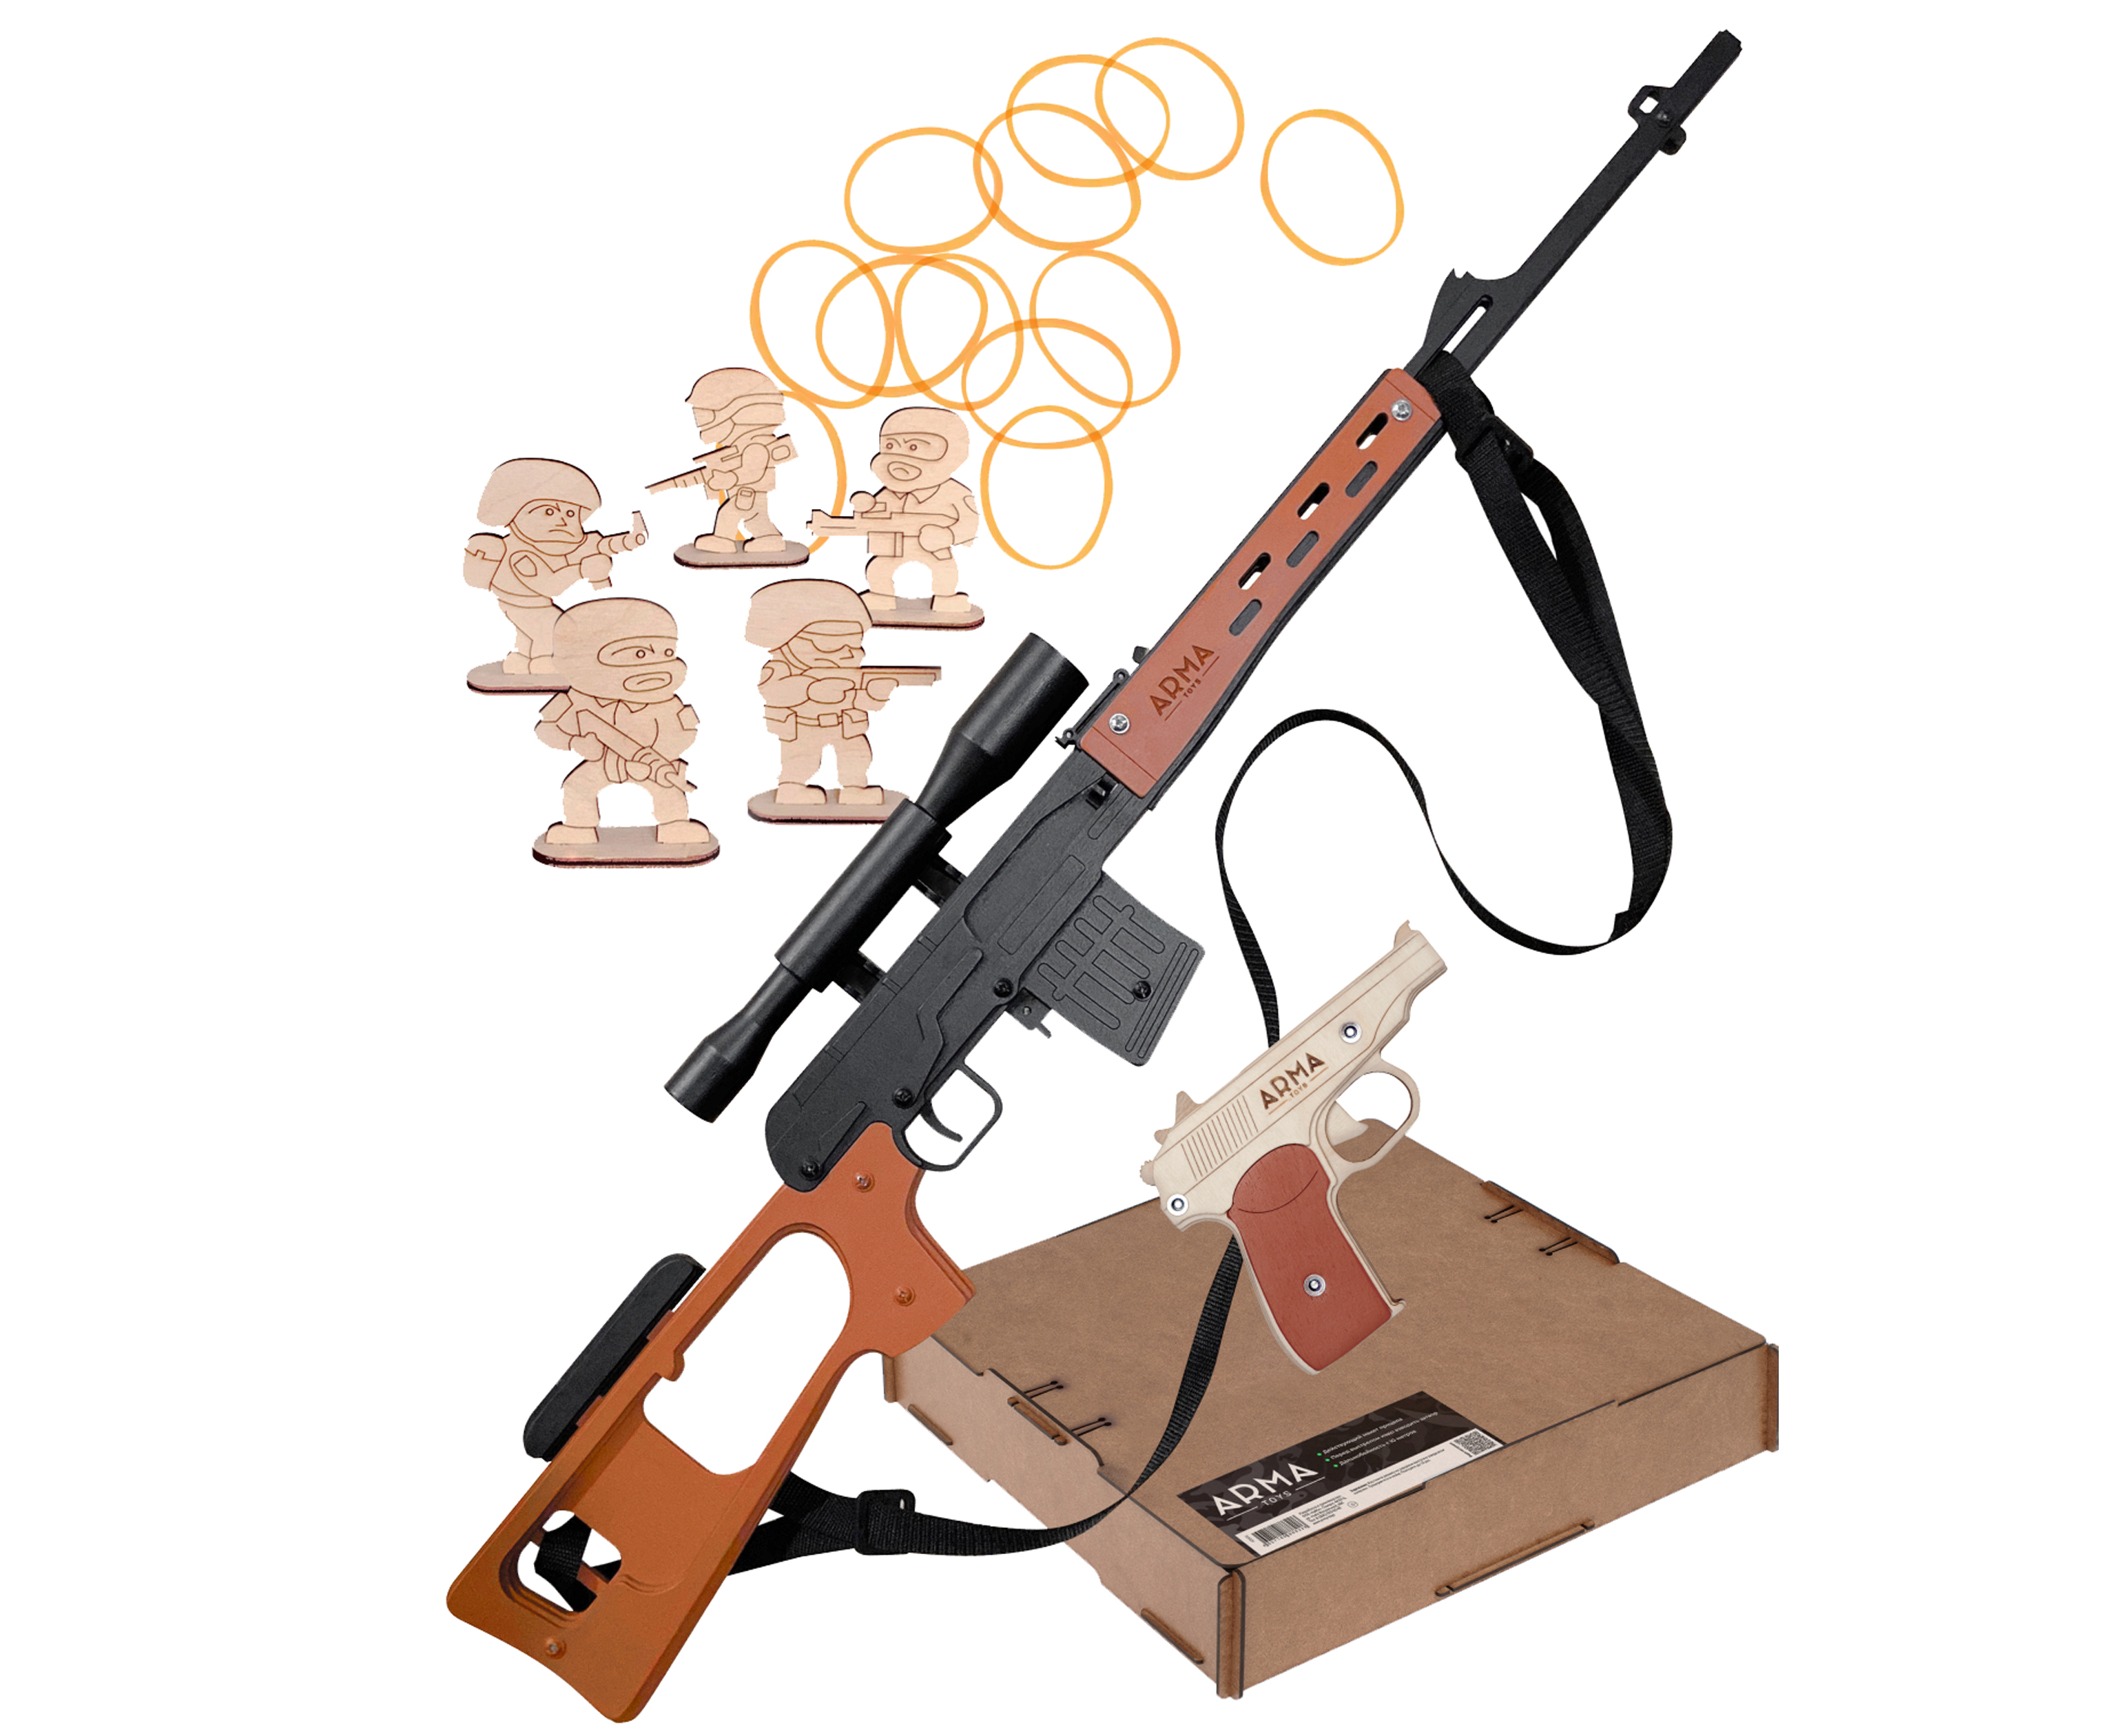 Набор игрушечных резинкострелов Arma toys Линия огня пистолет Макарова, винтовка Драгунова битва за францию 2 arma toys автомат мп 40 и пистолет кольт резинкострелы в наборе